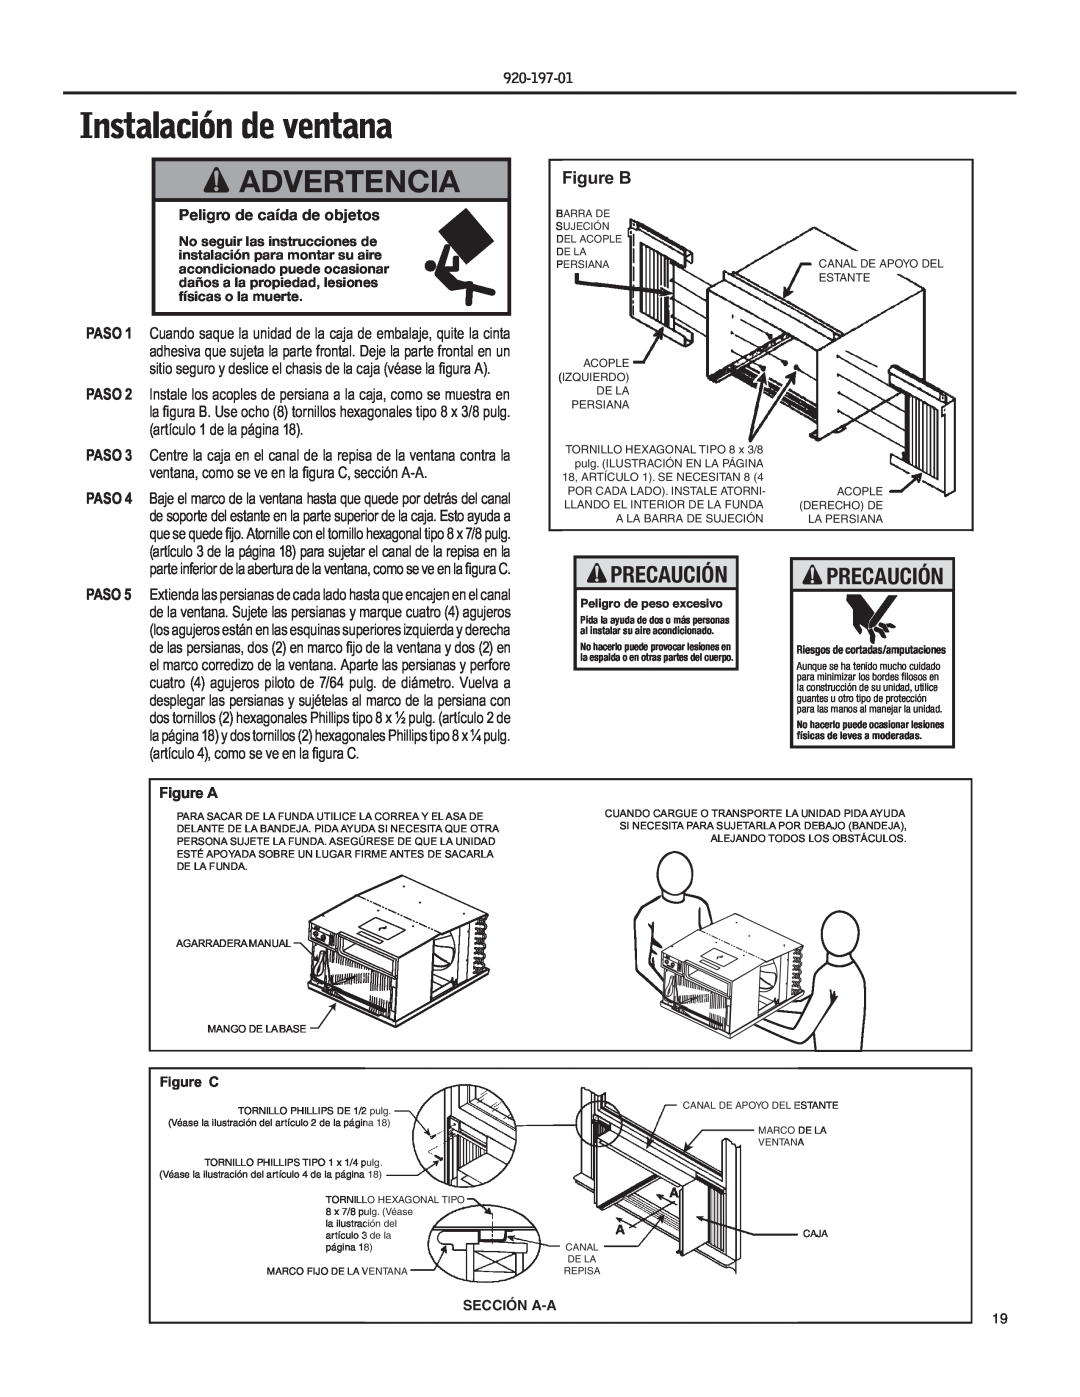 Friedrich EQ08, YQ07 operation manual Instalación de ventana, Advertencia, Precaución, Figure B, Peligro de caída de objetos 